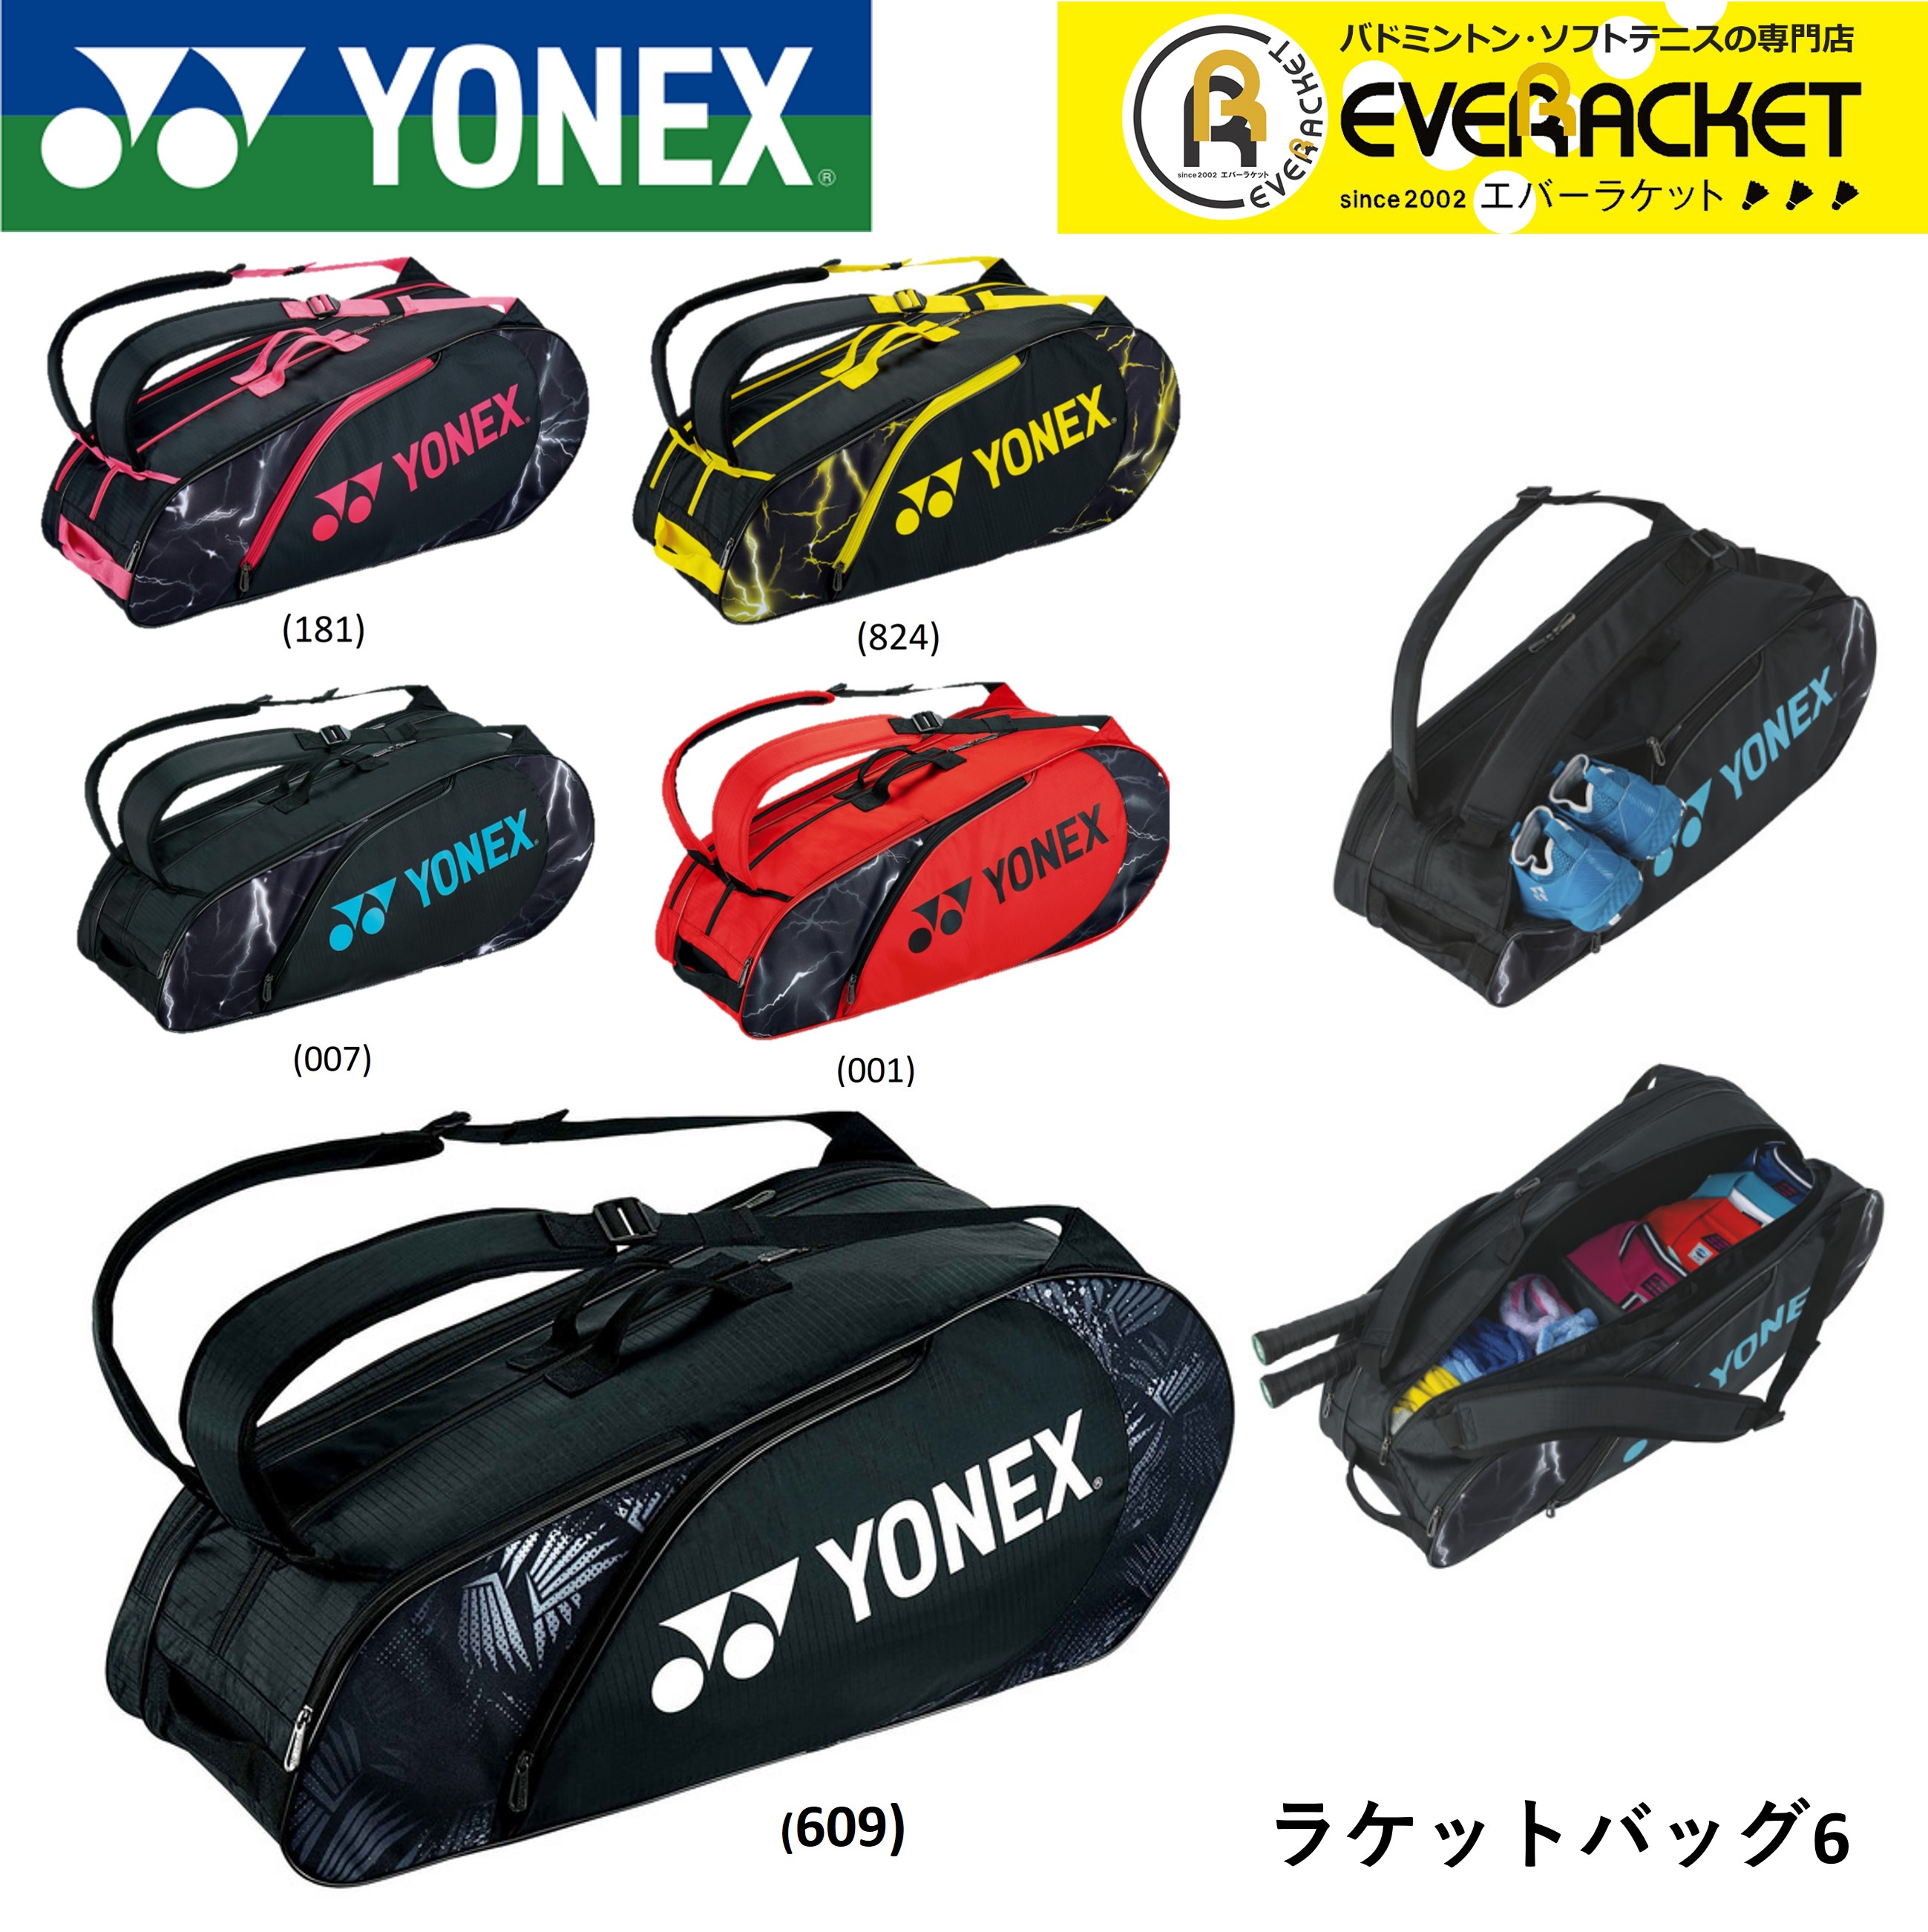 ヨネックス YONEX バッグ ラケットバッグ6 BAG2222R バドミントン・テニス